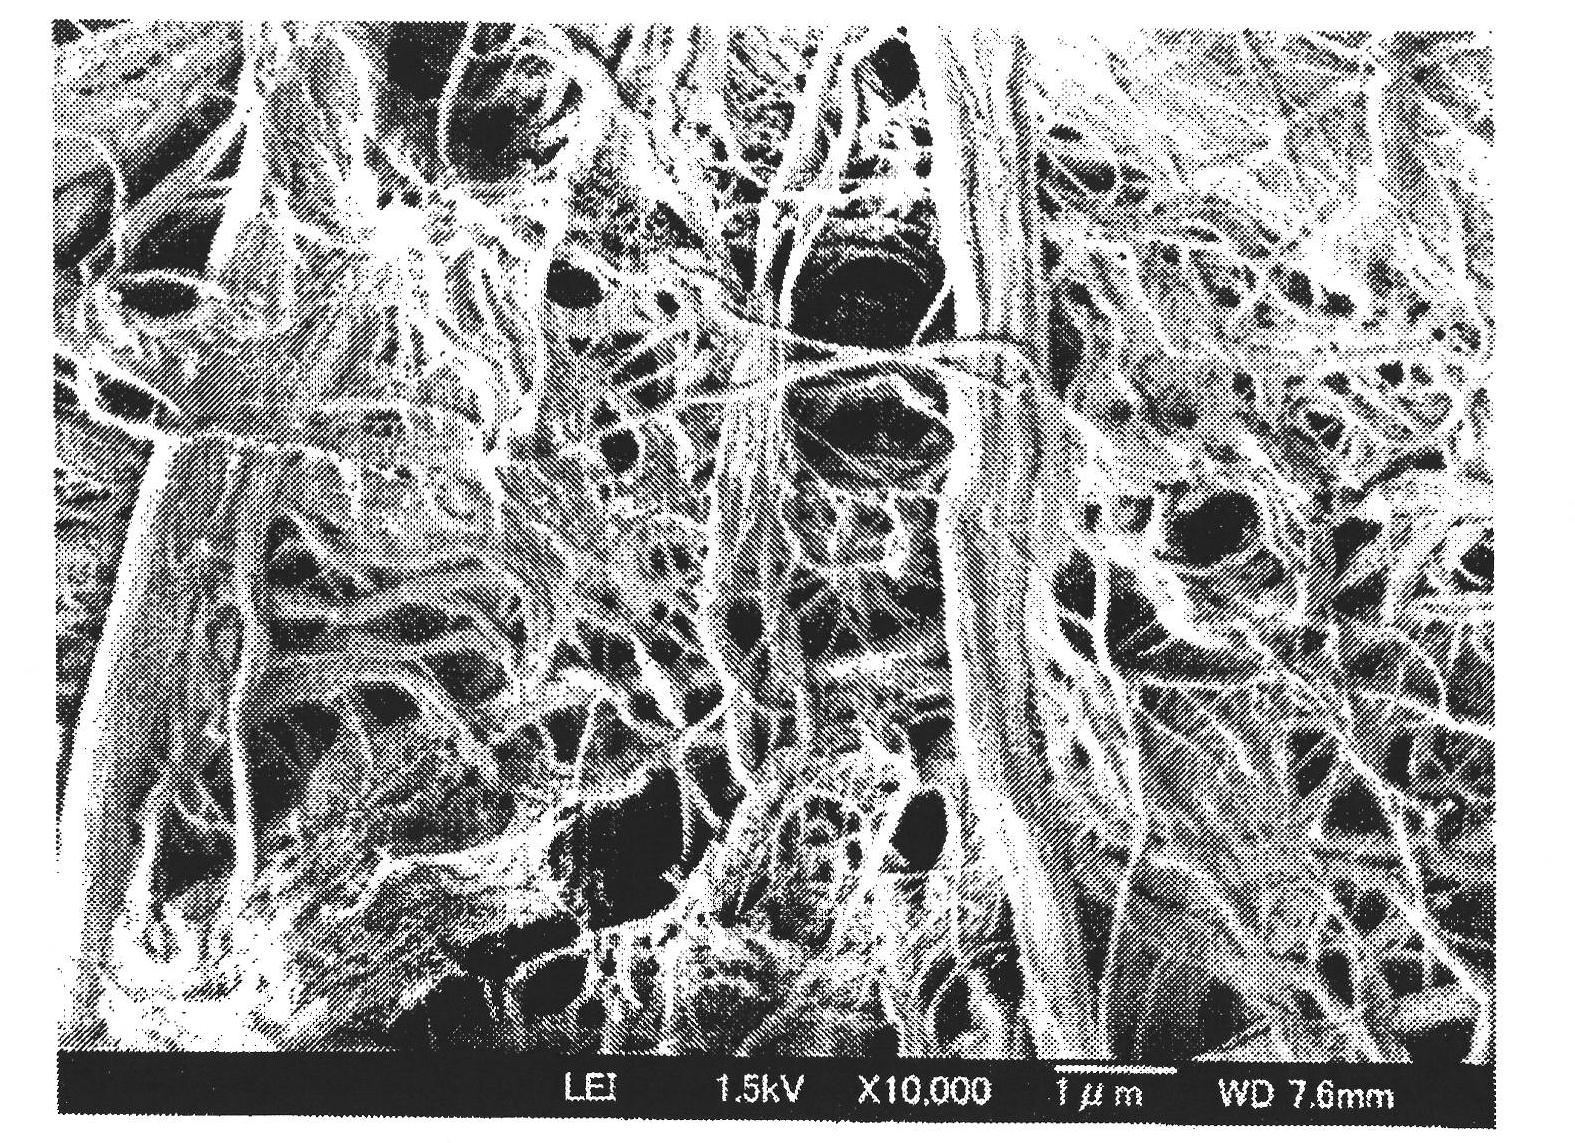 Cellulose nanofibers